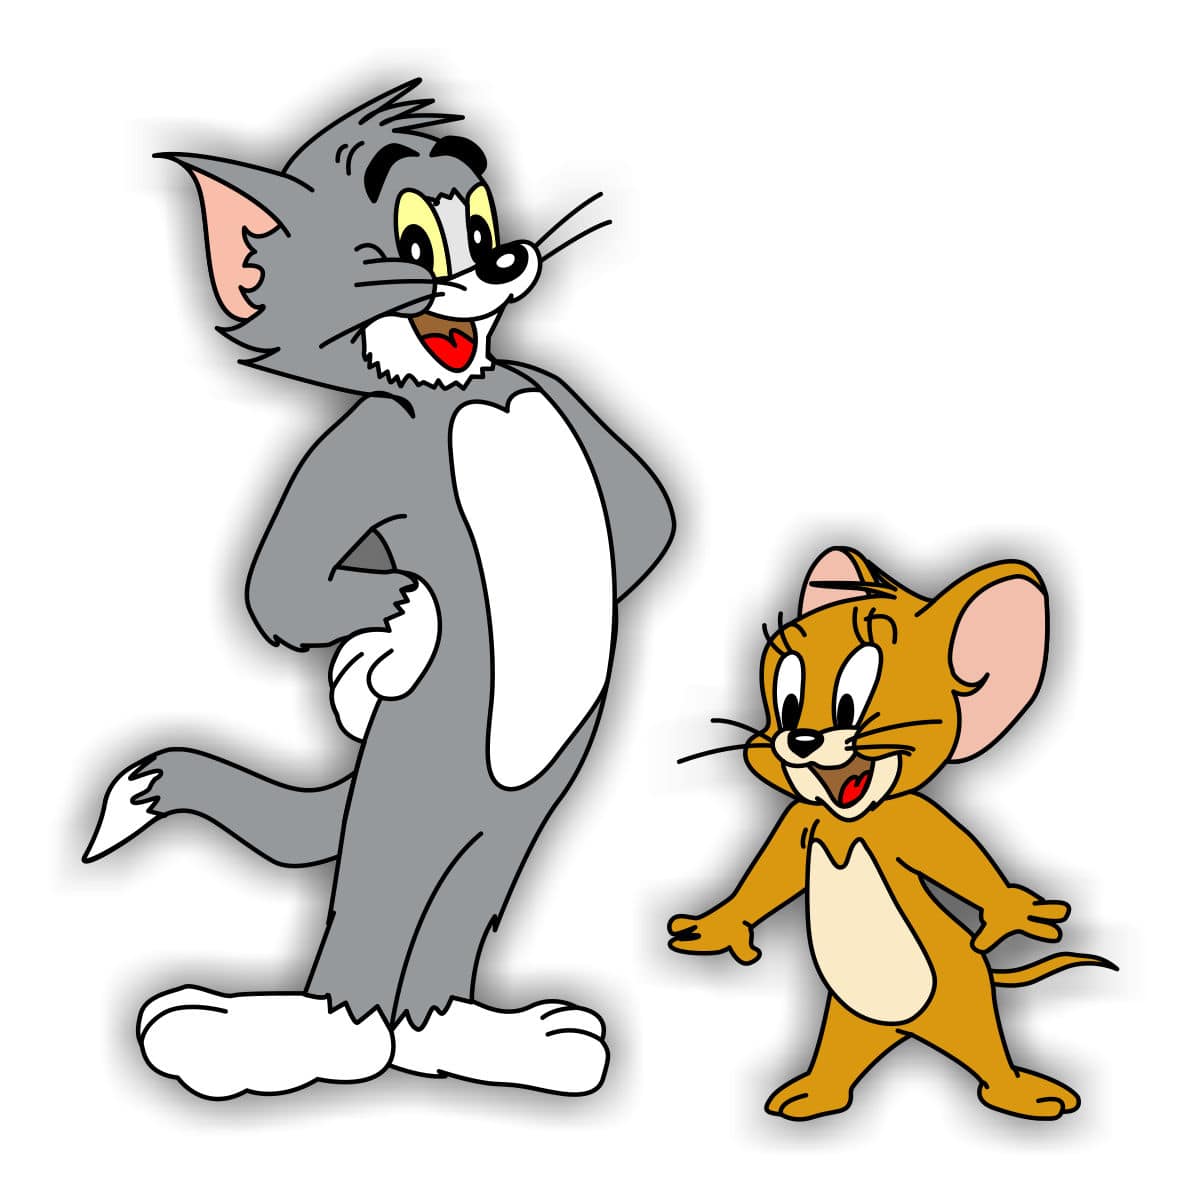 Jerry том и джерри. Tom and Jerry. Том и Джерри Джерри. Герои мультика том и Джерри. Том и Джерри (Tom and Jerry) 1940.